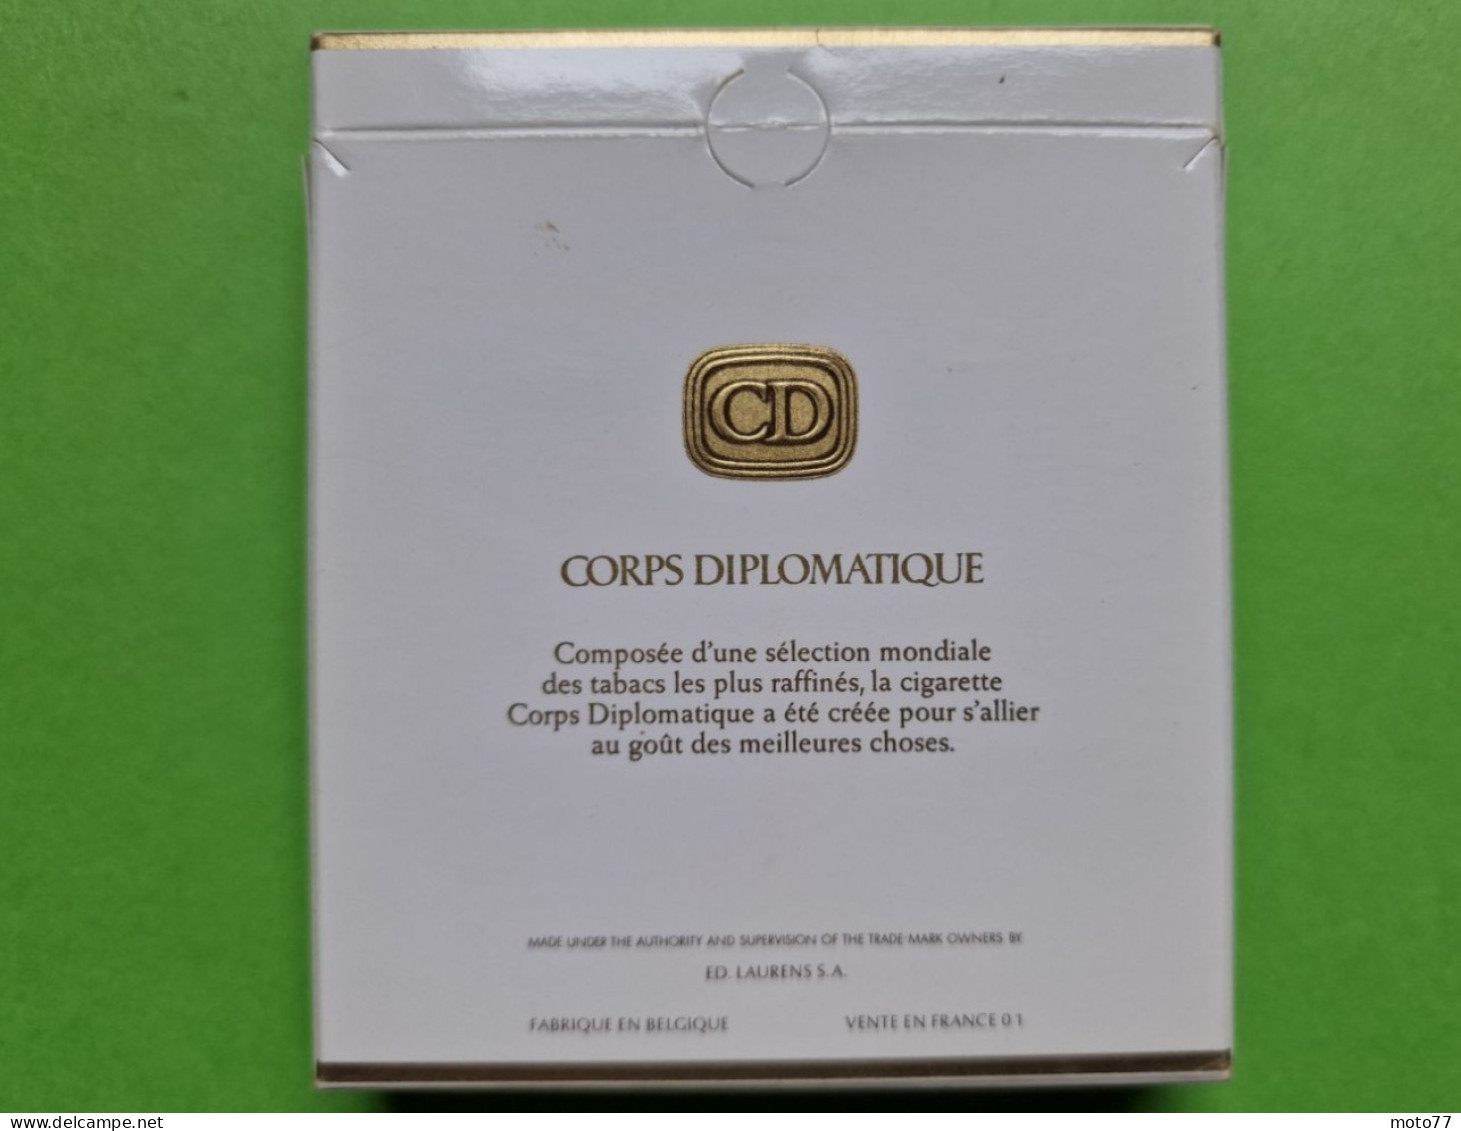 Ancien PAQUET De CIGARETTES Vide - CD CORPS DIPLOMATIQUE - Vers 1980 - Empty Cigarettes Boxes